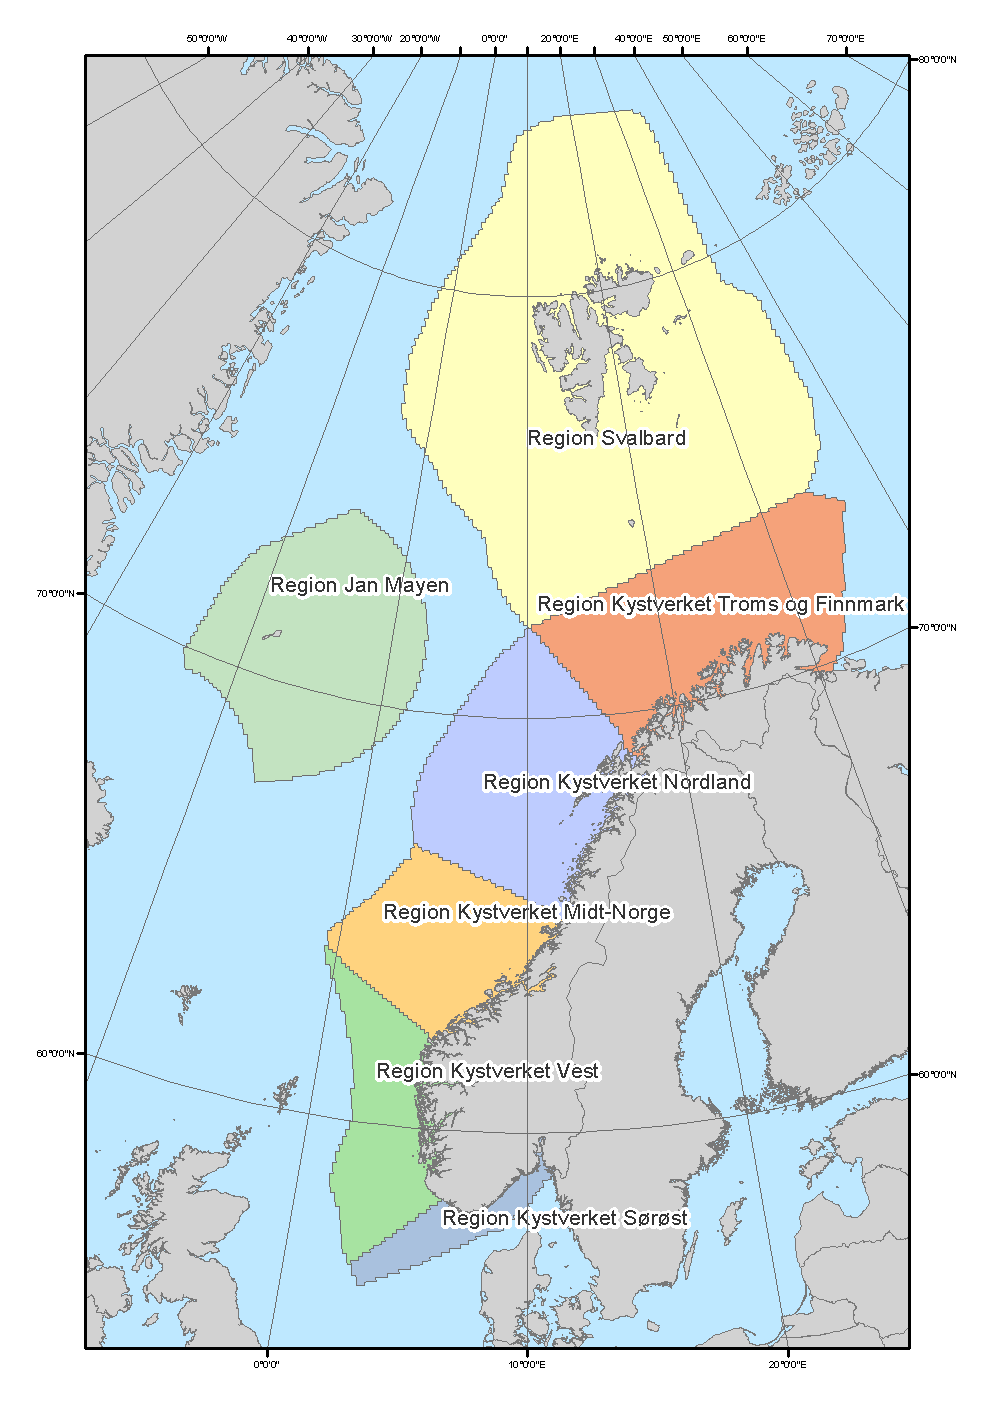 områdene rundt Fastlands-Norge, et grid som i stadig større grad brukes for blant annet miljøverdier og annen statistikk. Analysen er i stor grad basert på statistisk materiale.